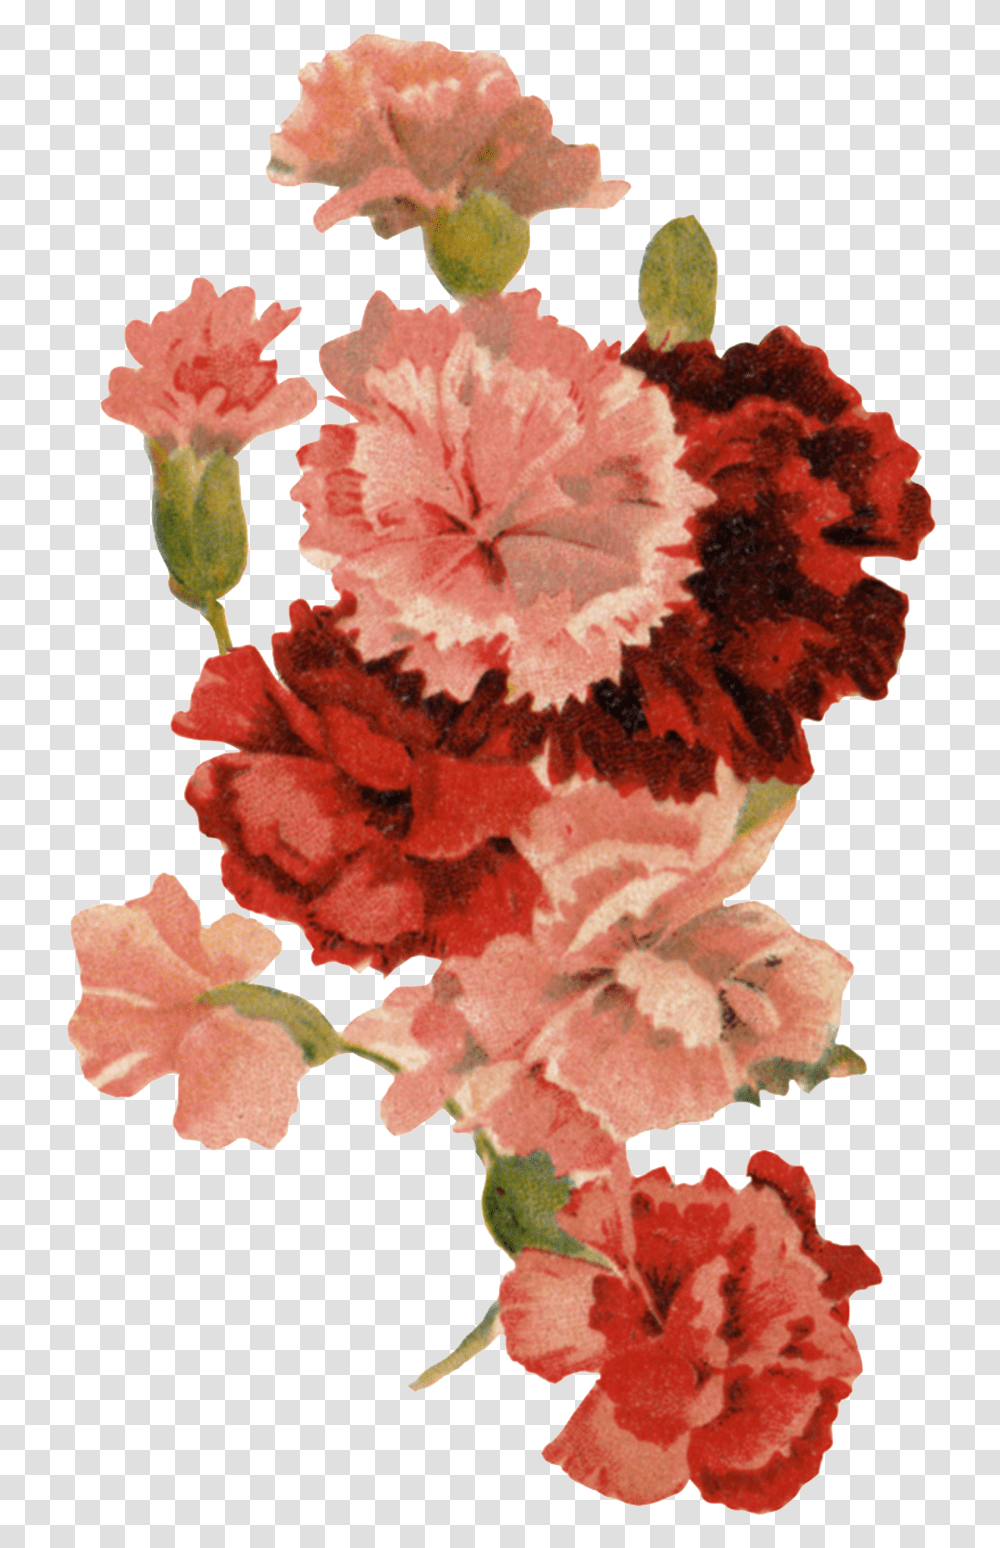 Background Carnation, Plant, Flower, Blossom Transparent Png